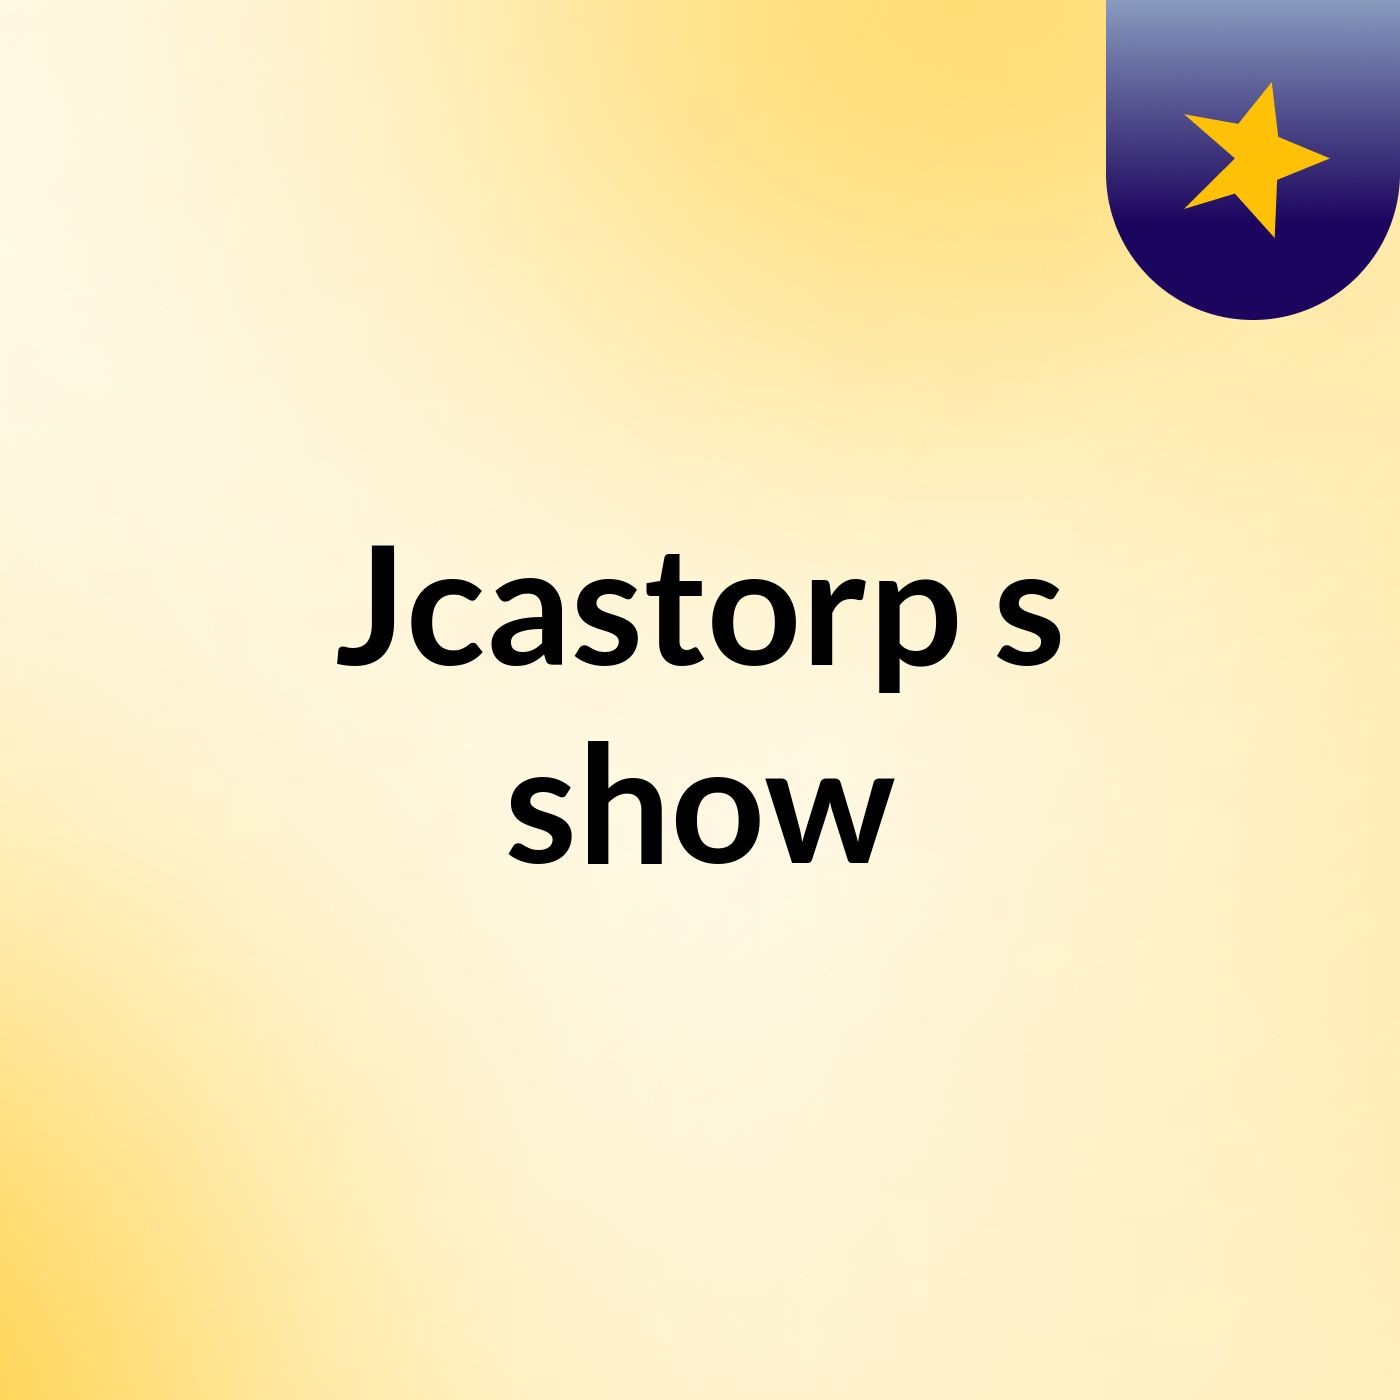 Jcastorp's show